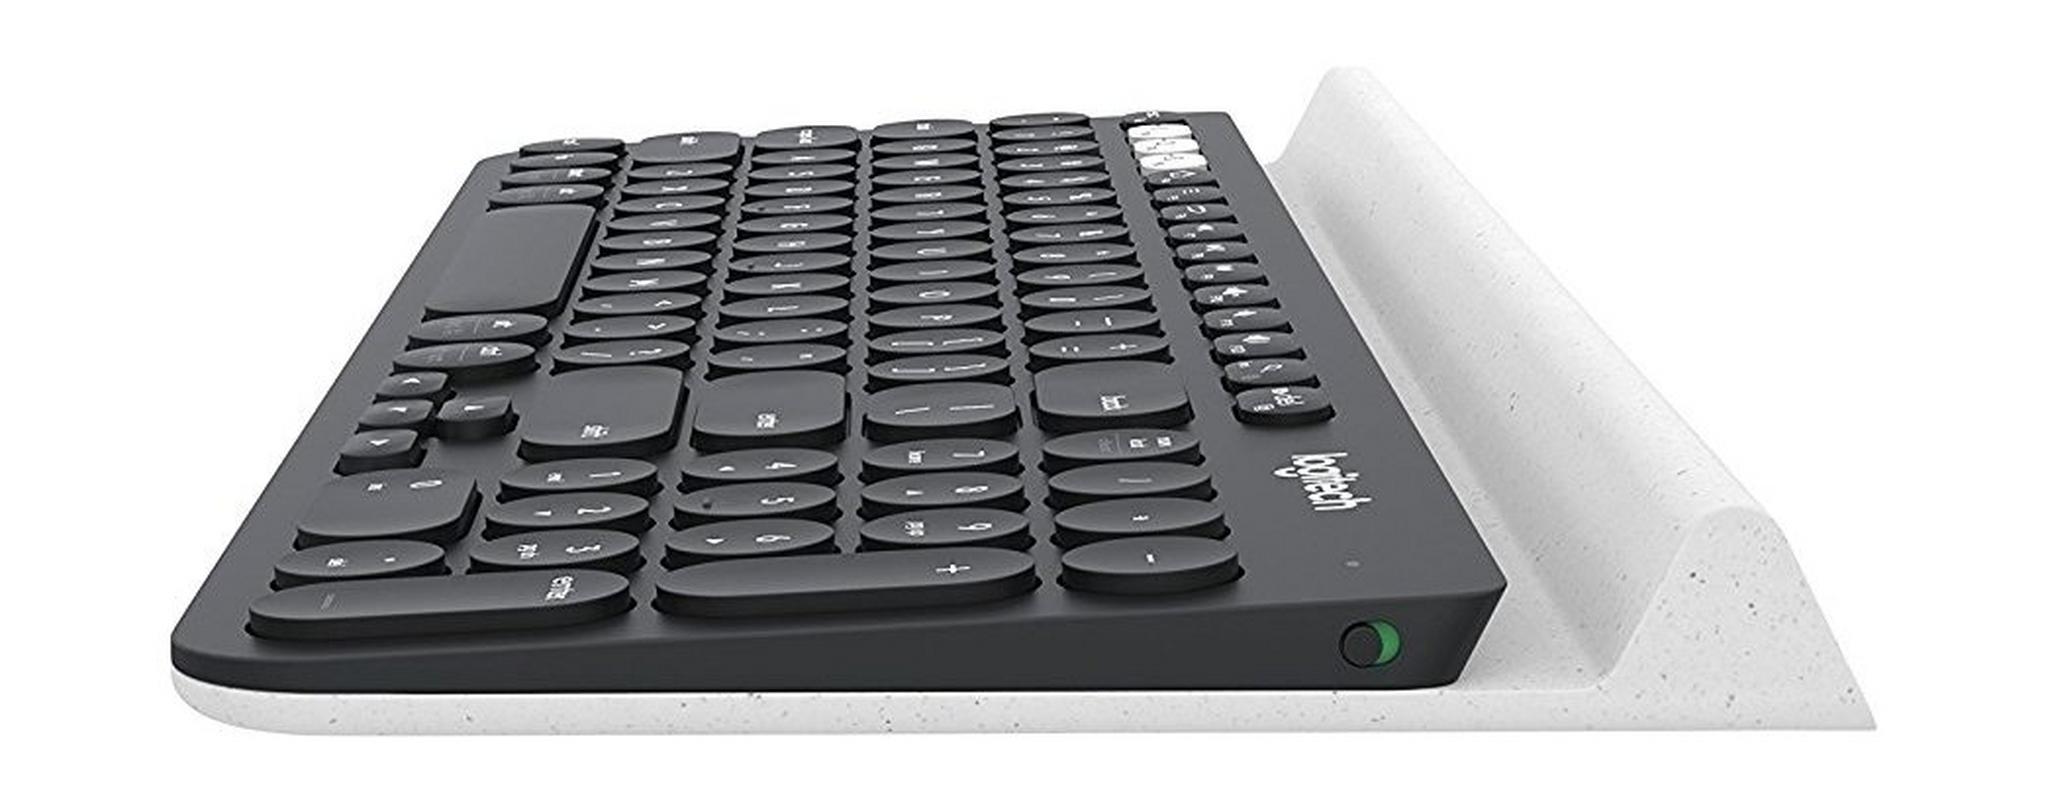 Logitech K780 Multi-Device Wireless Keyboard - (920-008042)